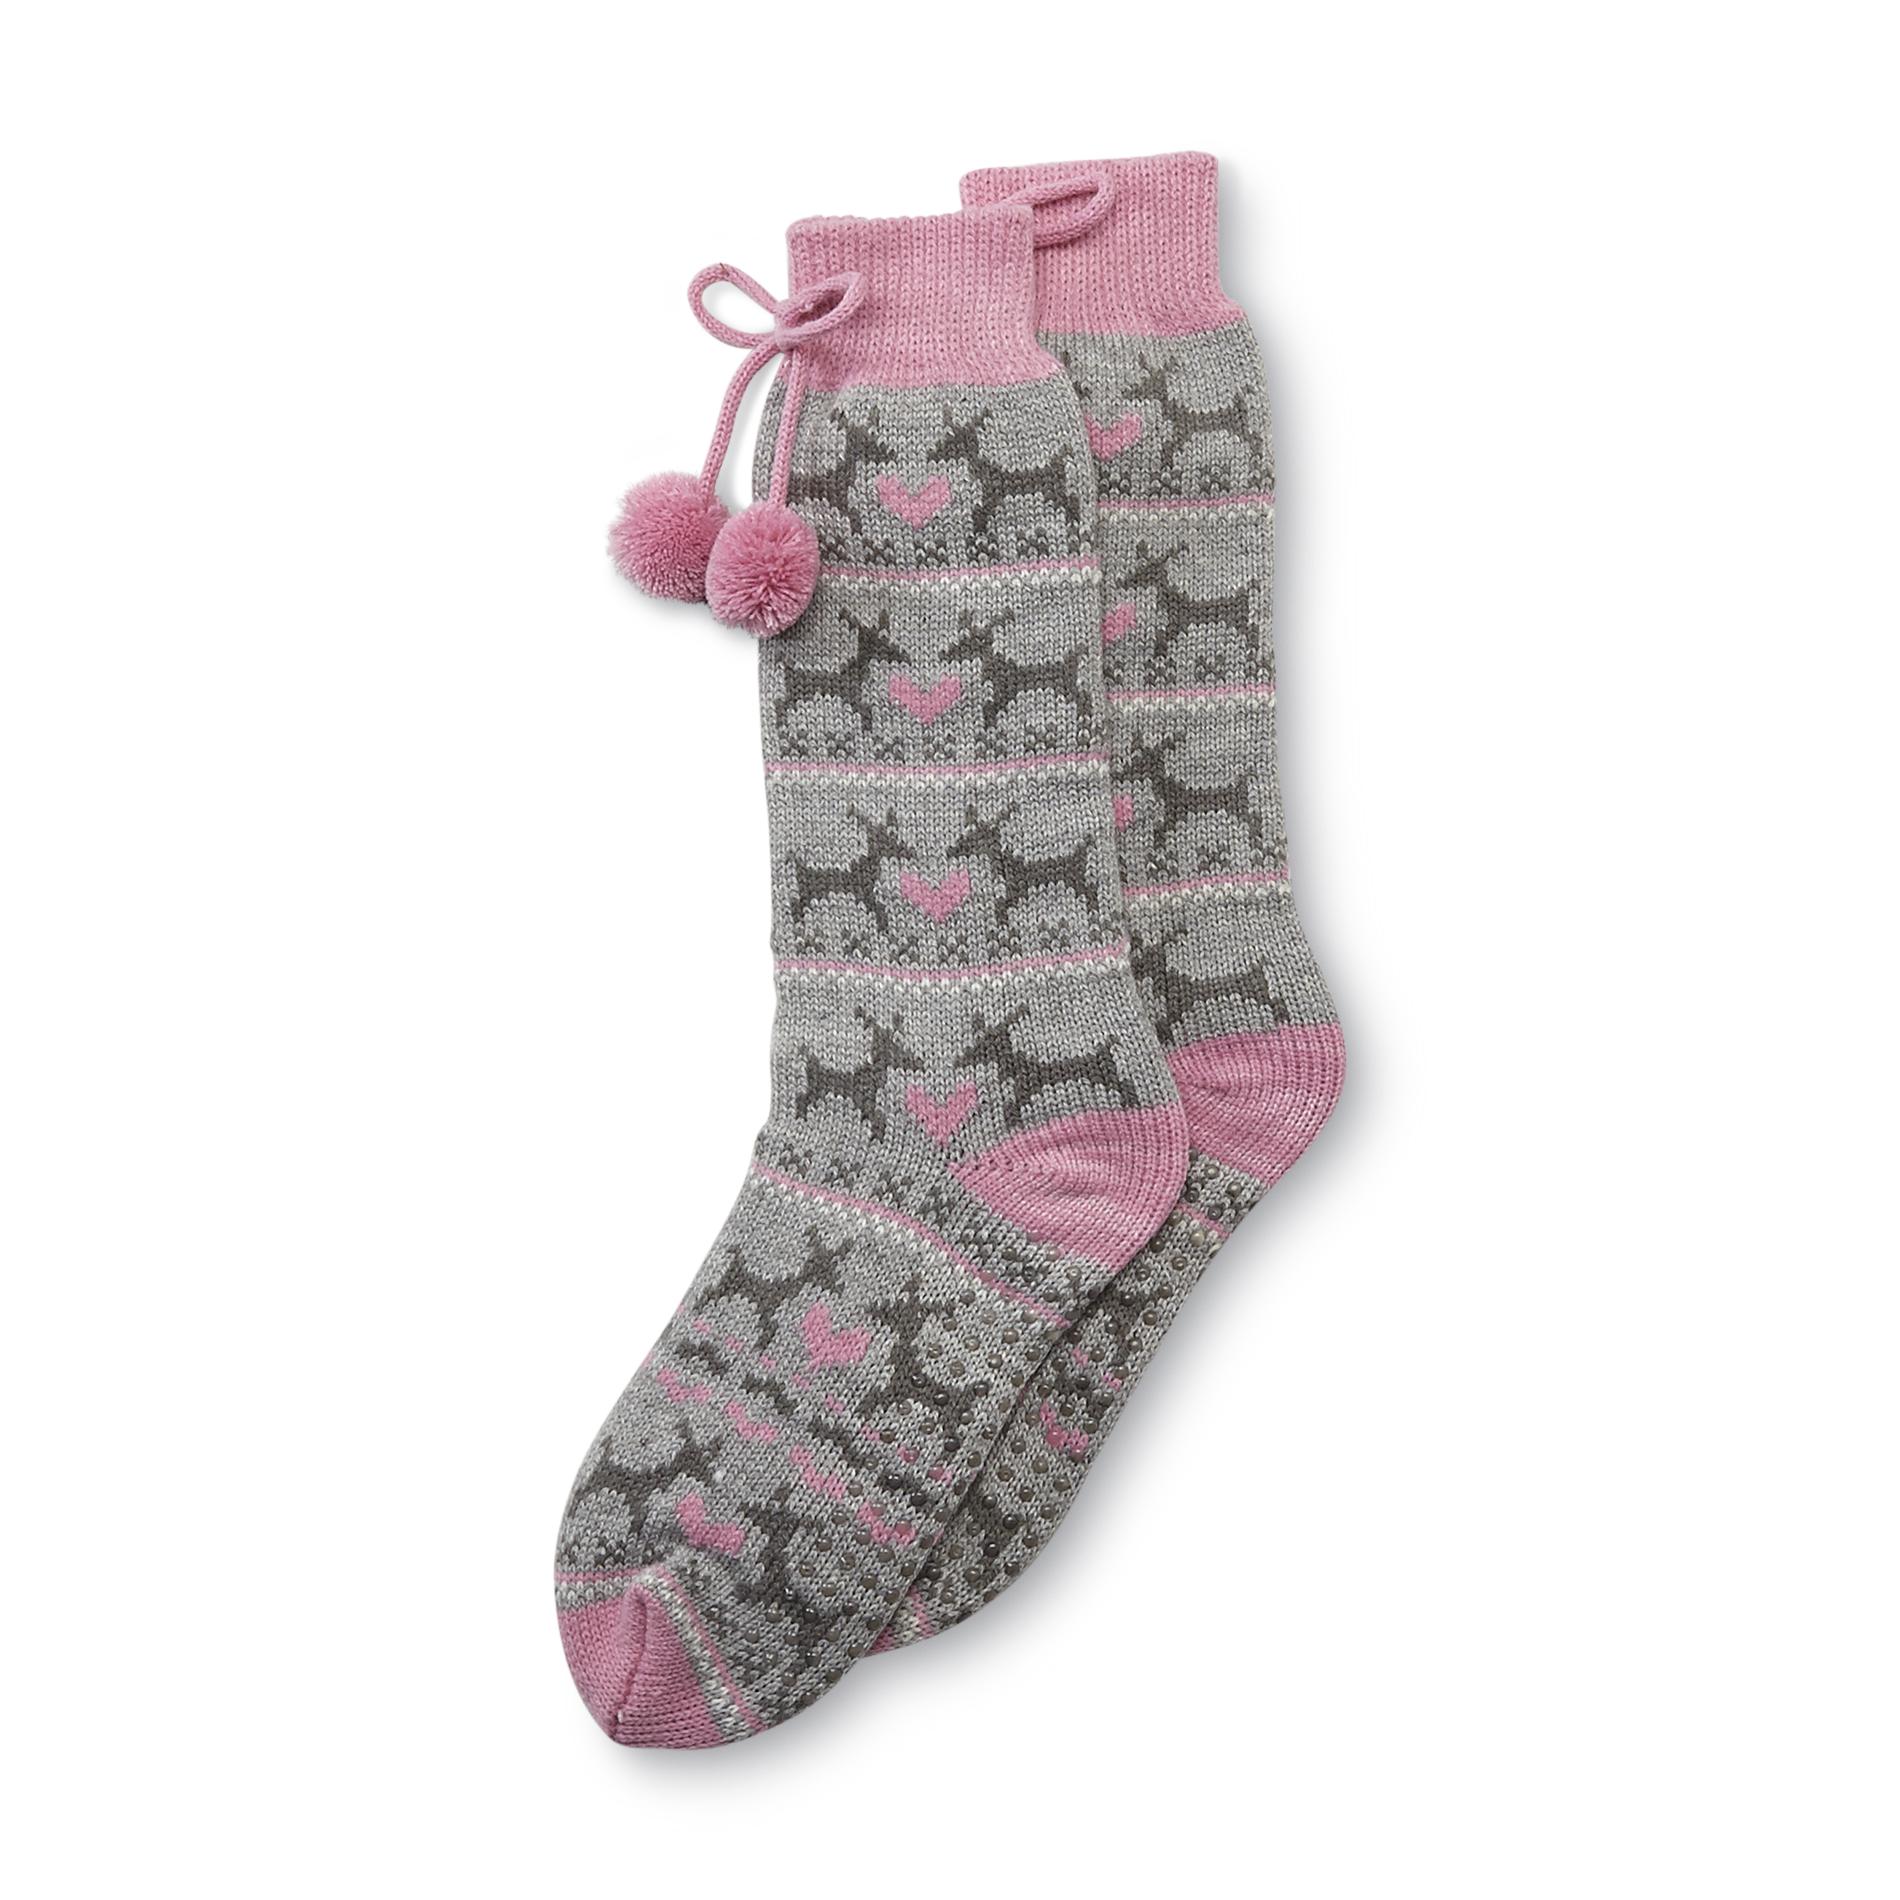 Joe Boxer Women's Christmas Crew Slipper Socks - Reindeer & Hearts